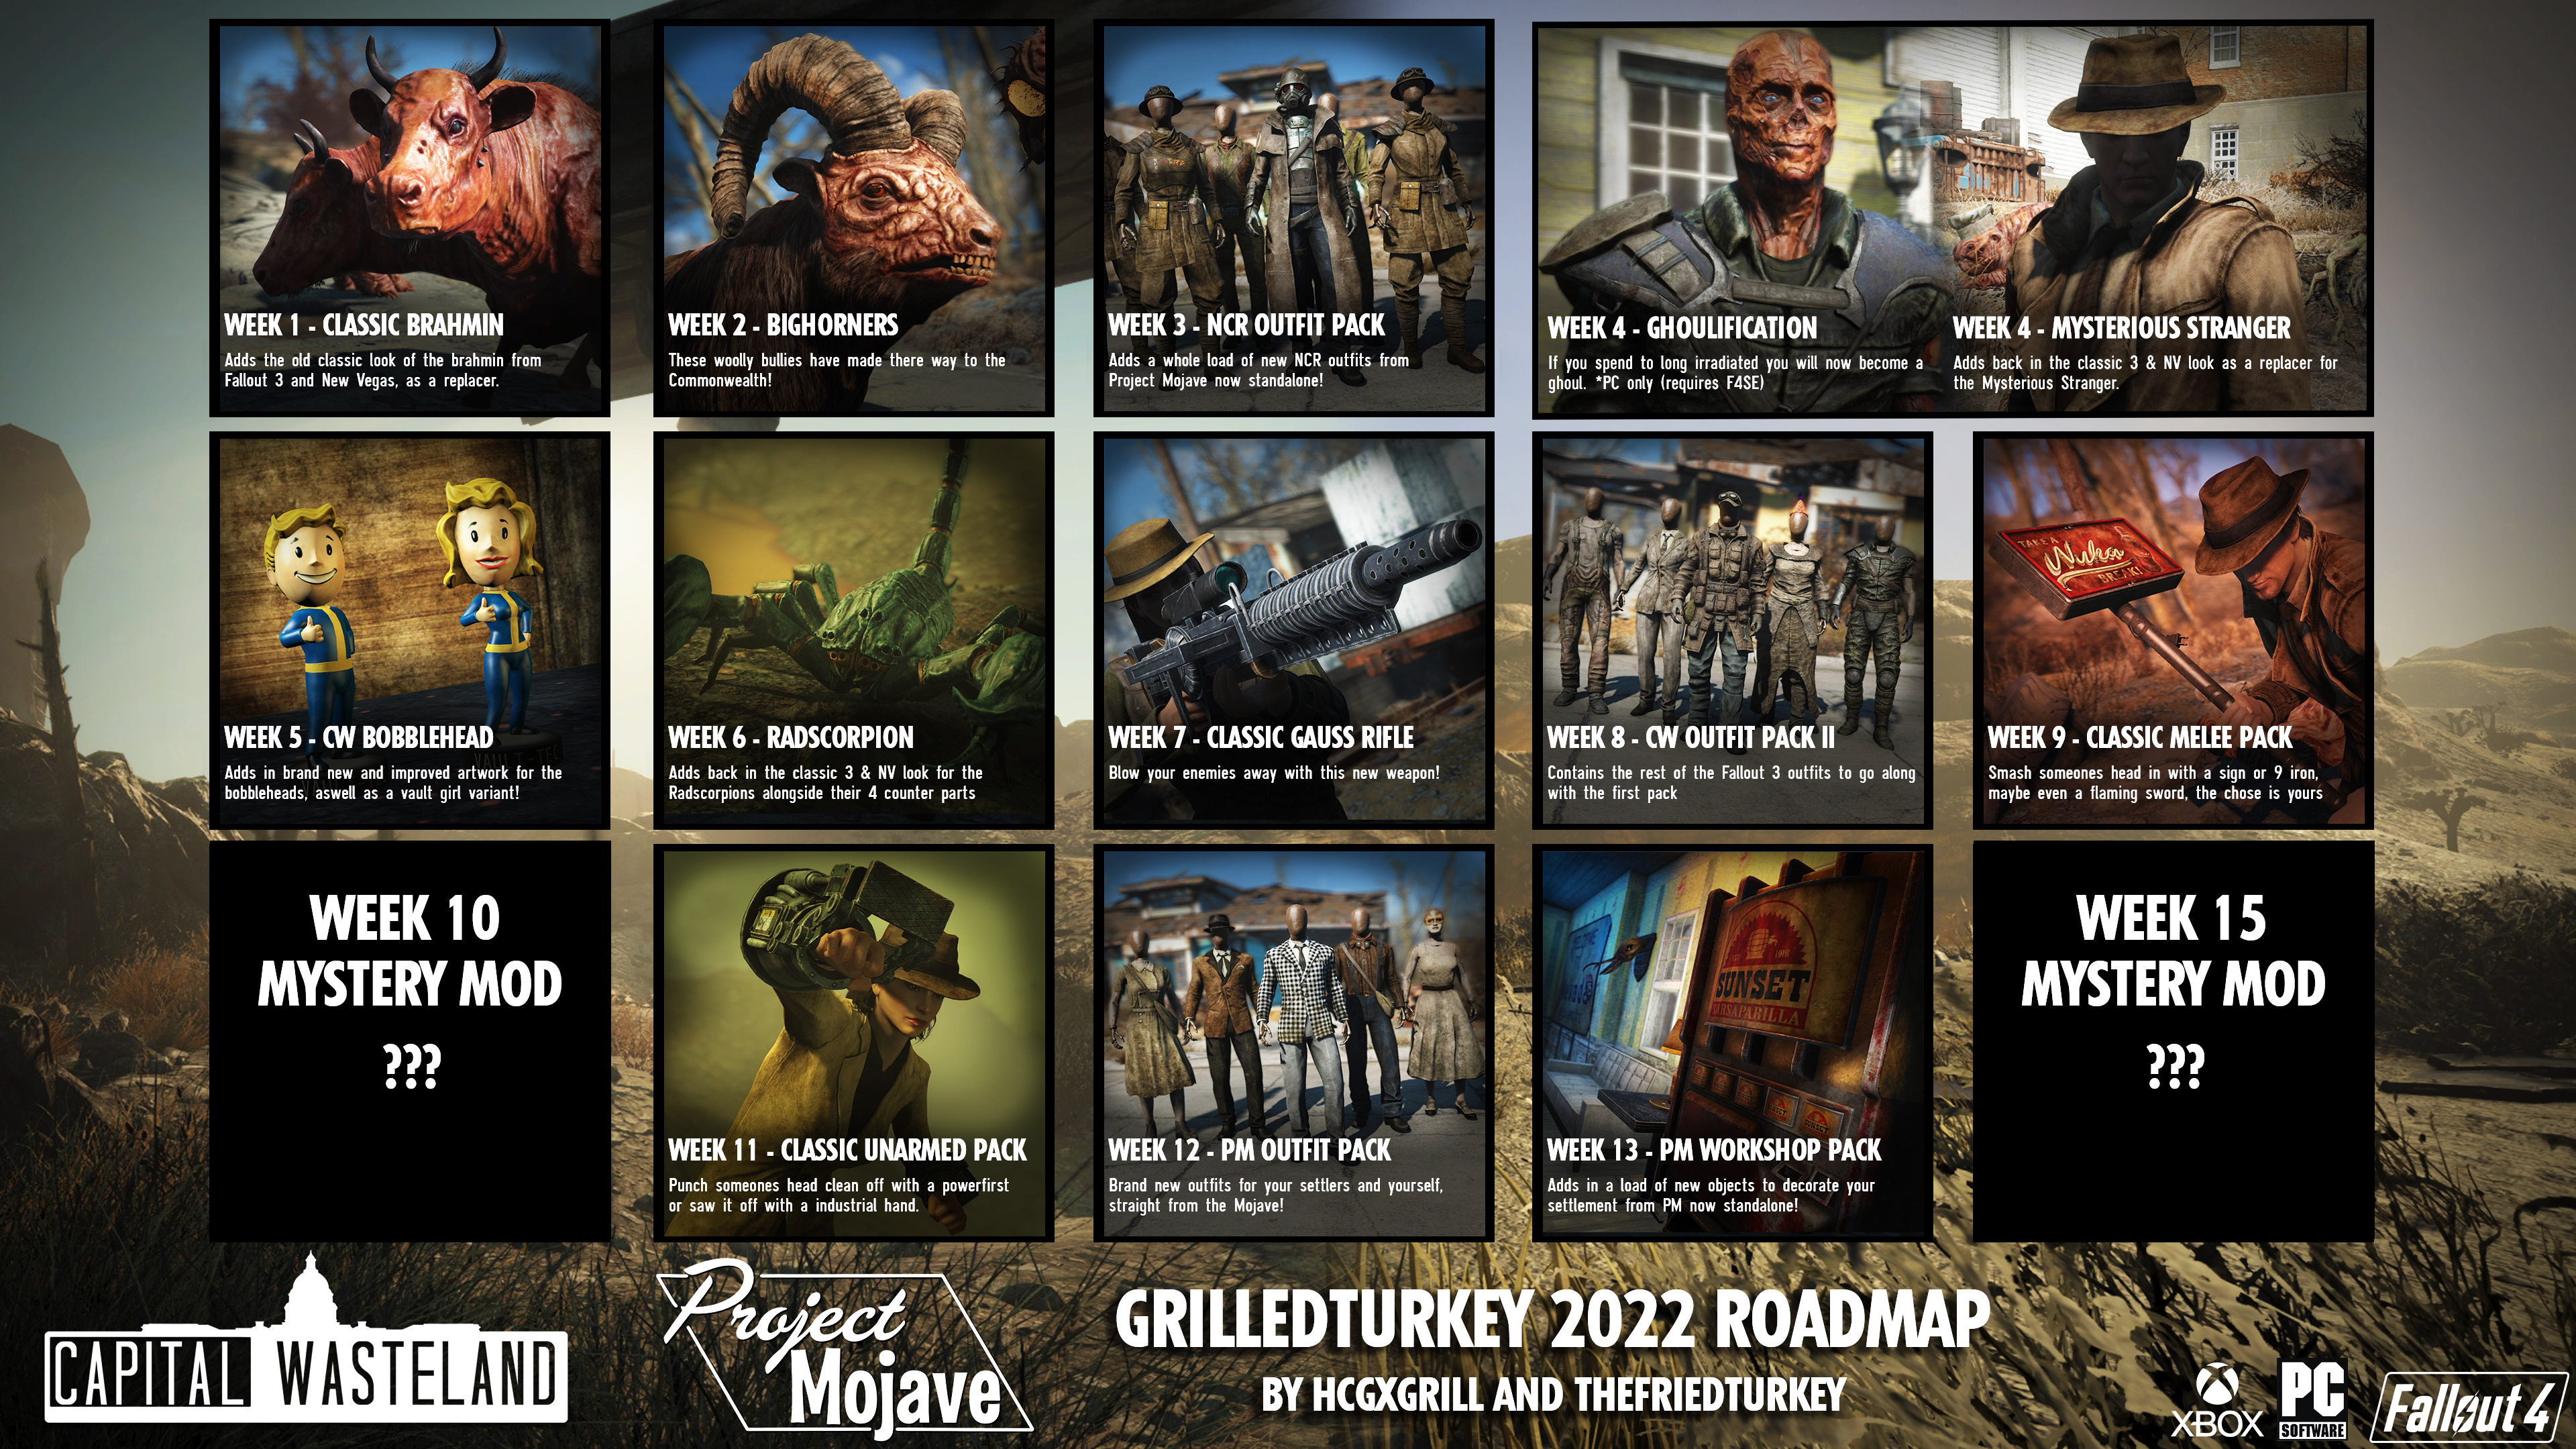 Grilledturkey 2022 Roadmap